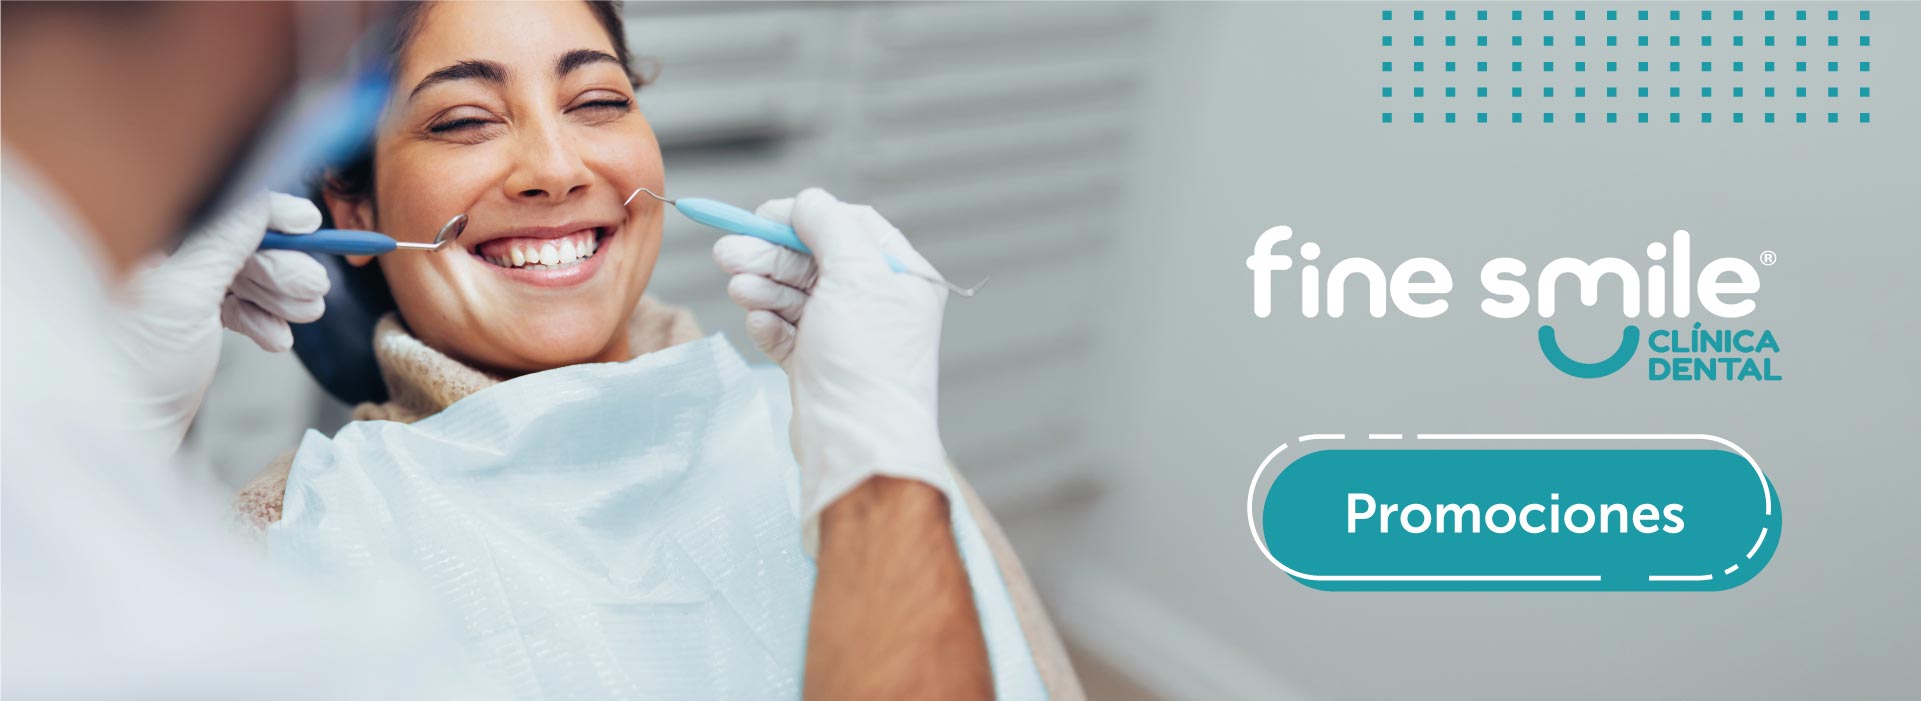 Promociones Fine Smile - Clínicas Dentales - Dentegra® Seguros Dentales